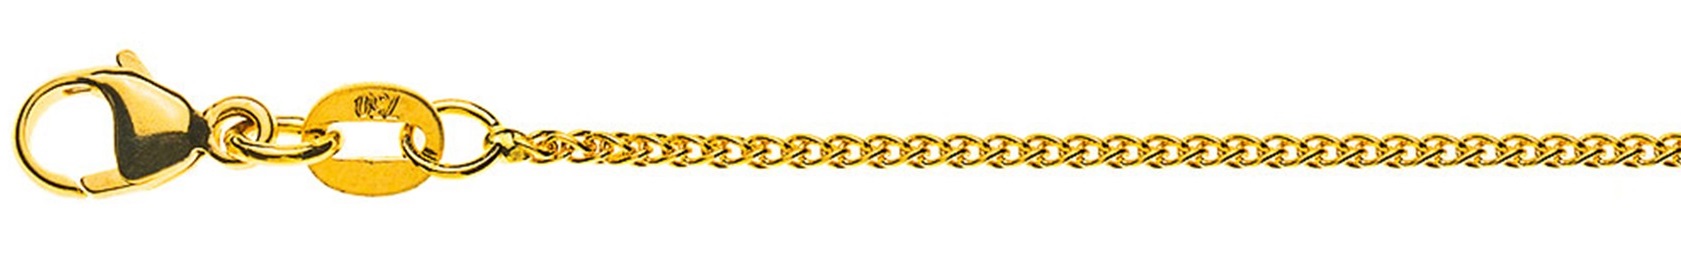 AURONOS Prestige Halskette Gelbgold 18K Zopfkette 42cm 1.2mm